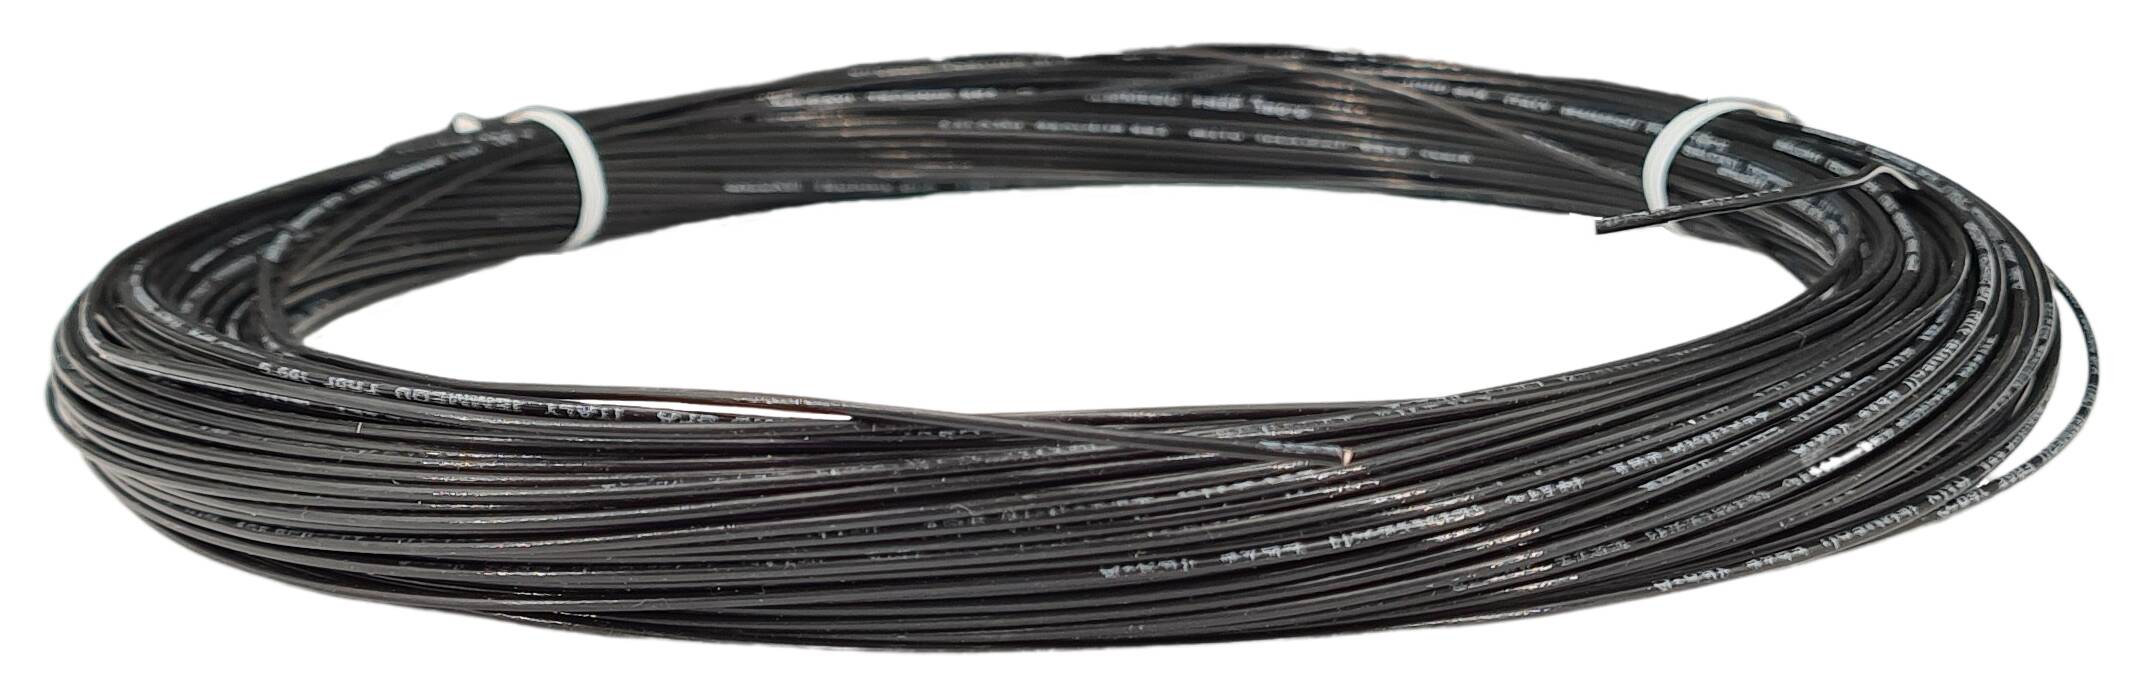 Teflon strand cable 1x1,50 FEP black